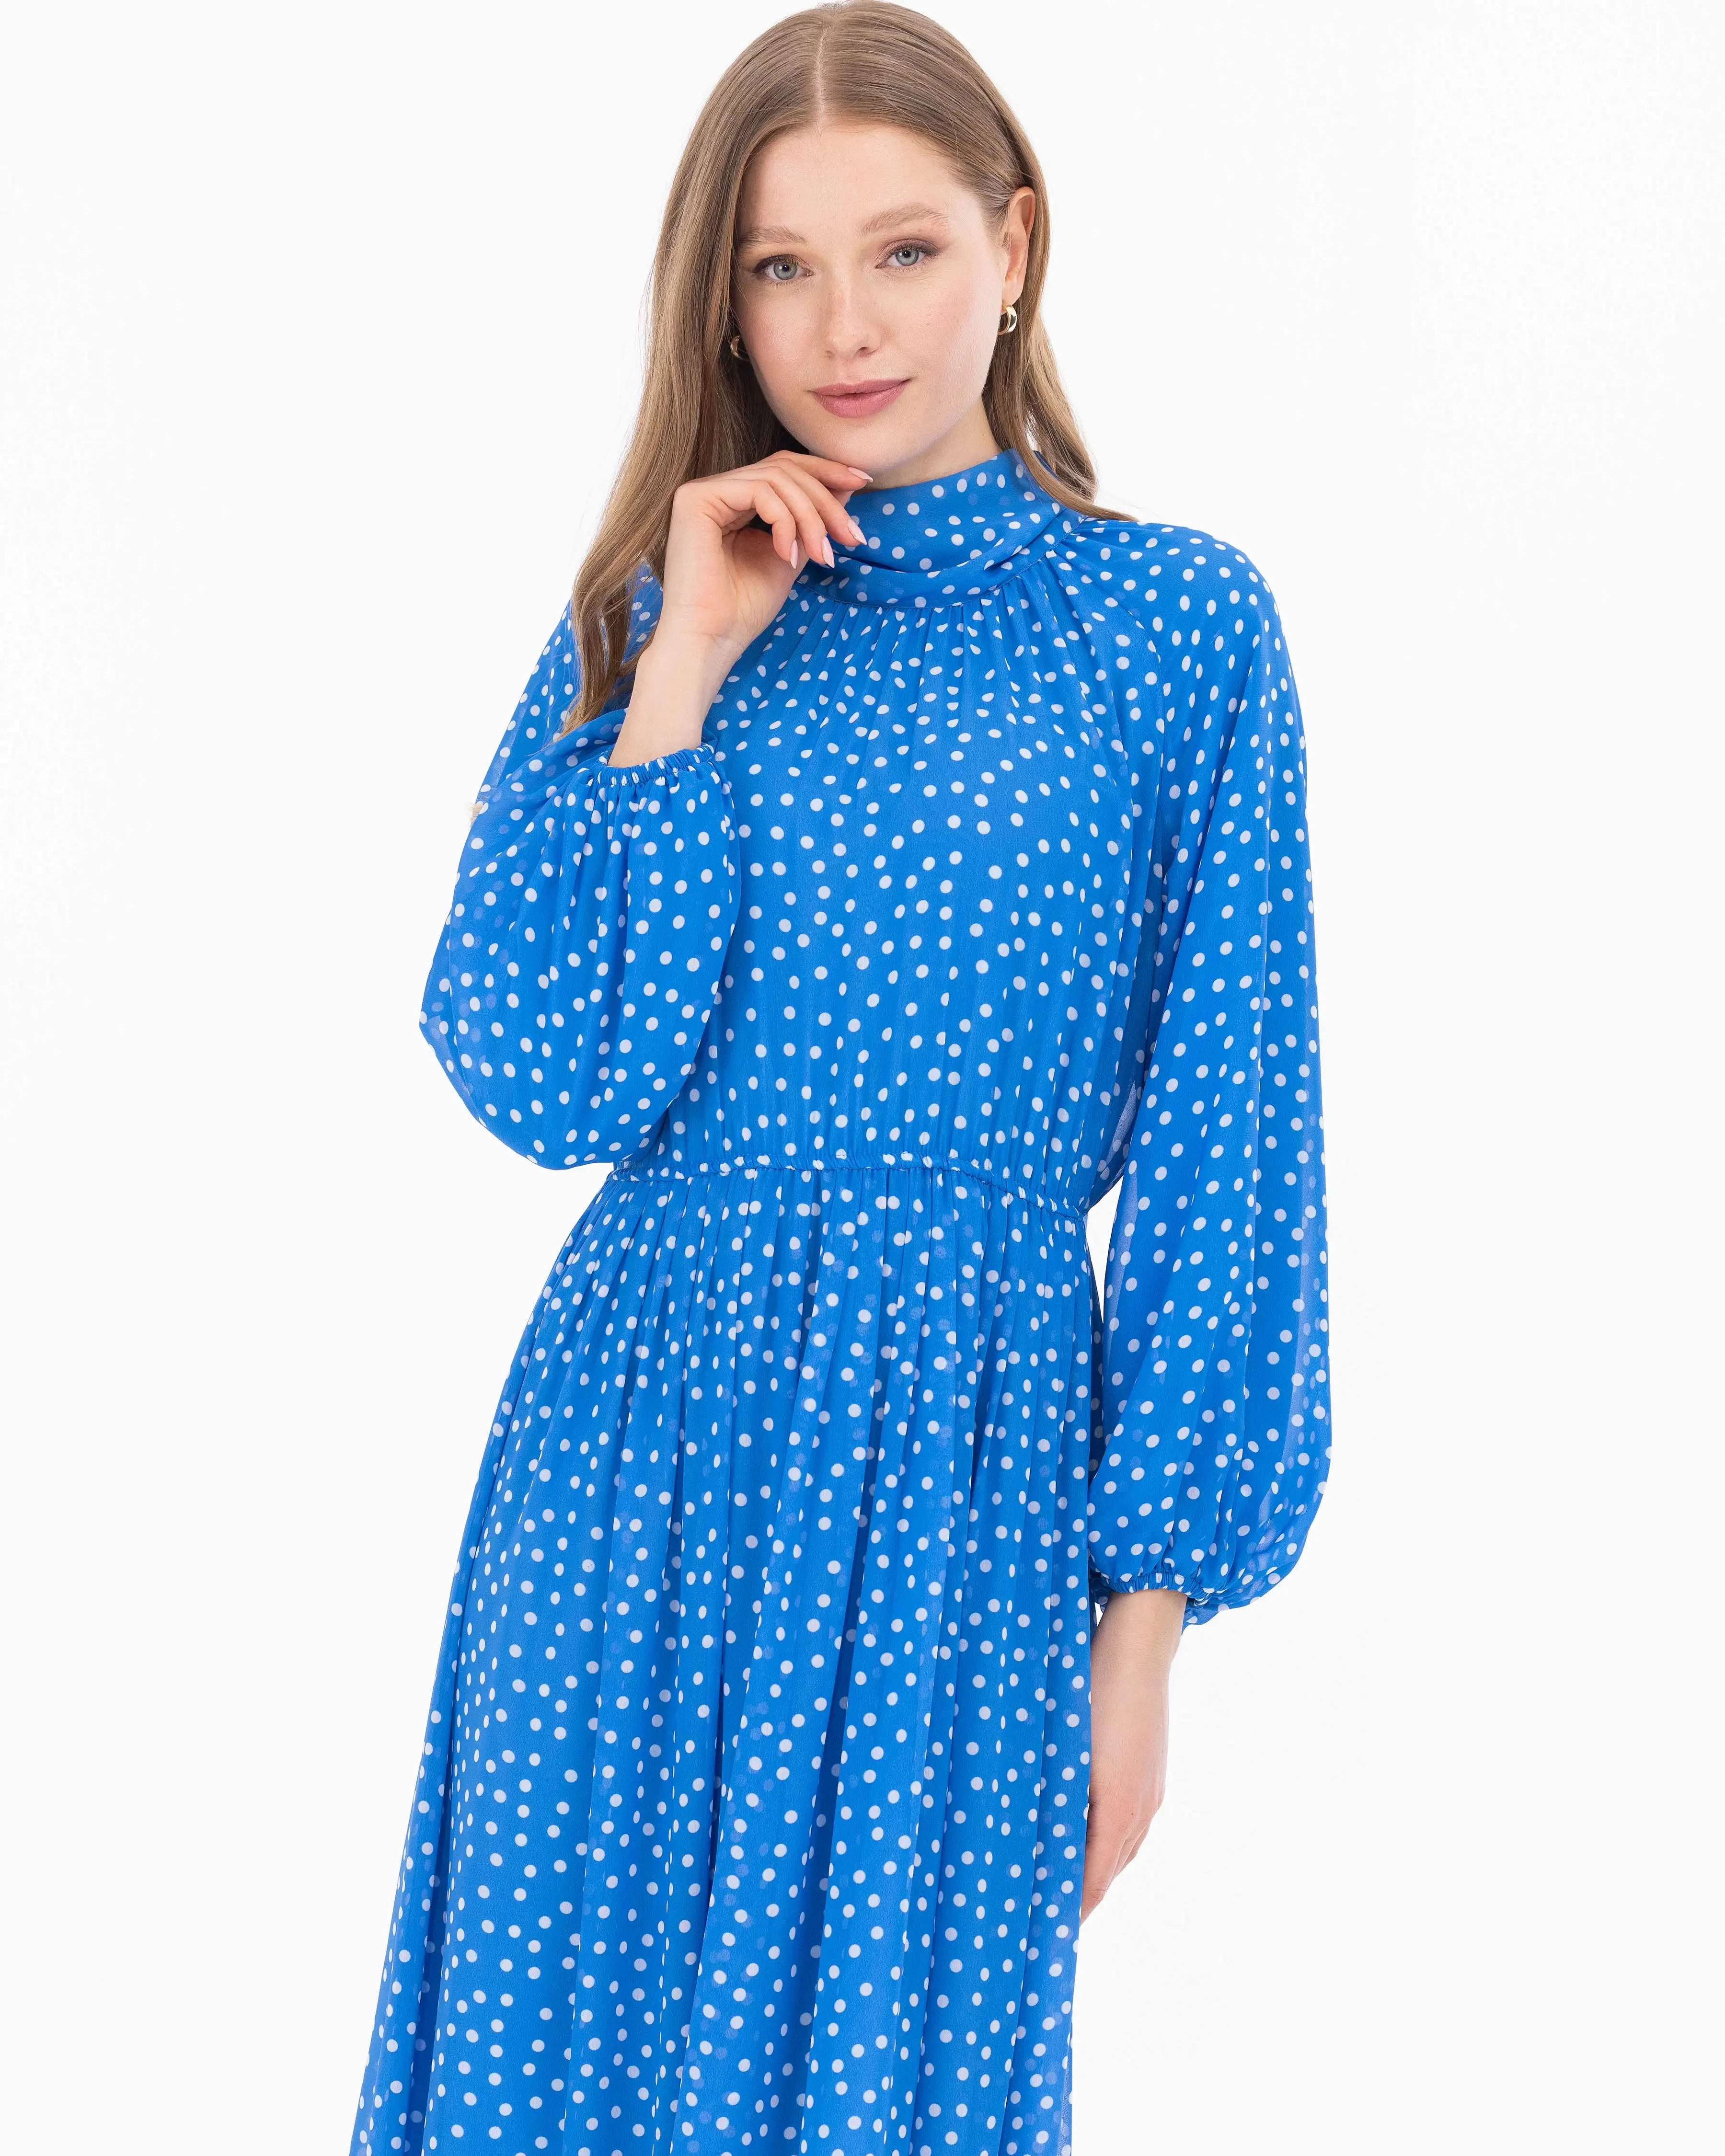 Puantiye Desen Astarlı Şifon Elbise-Mavi - 2